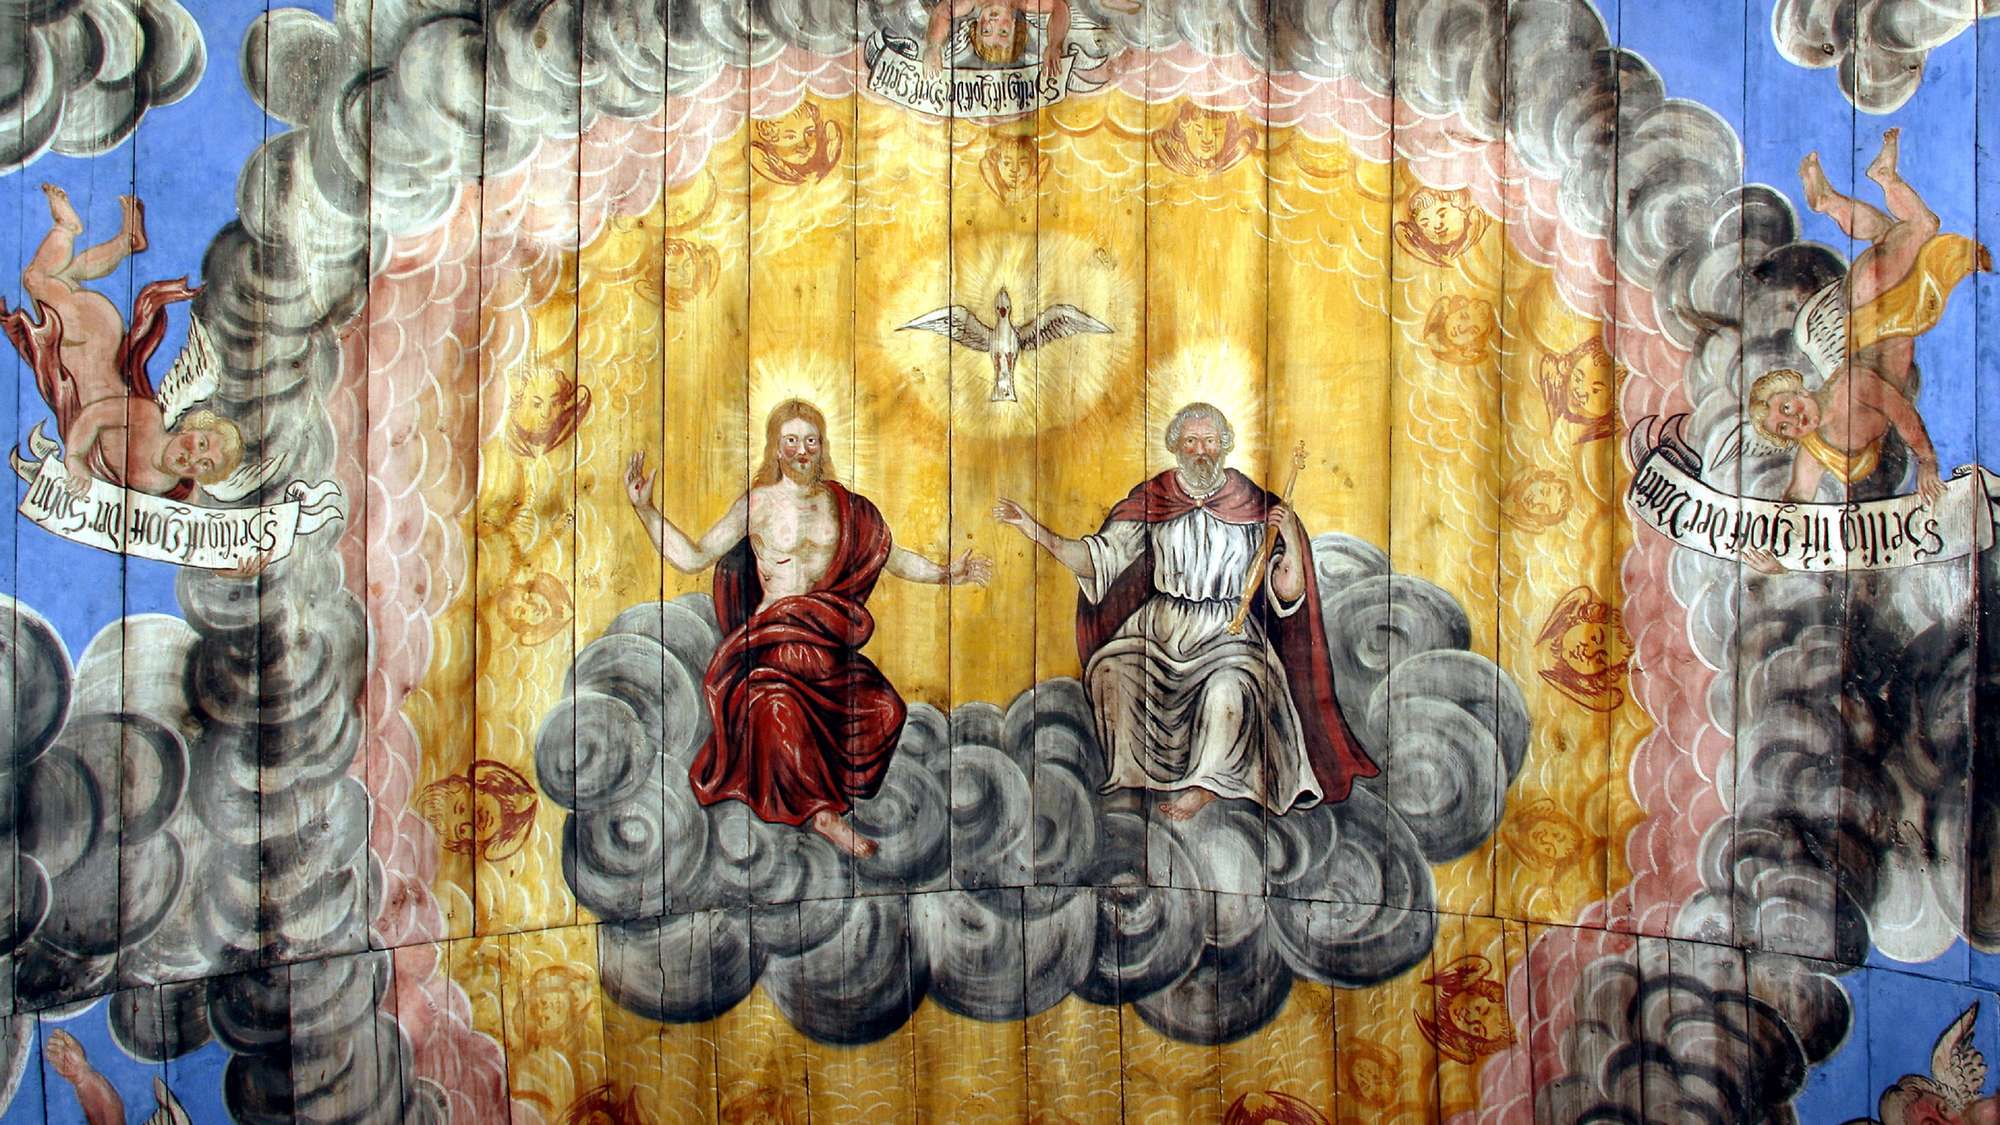 Deckenmalerei (Vater, Sohn und heiliger Geist) in der Kirche Großkochberg bei Weimar, Thüringen